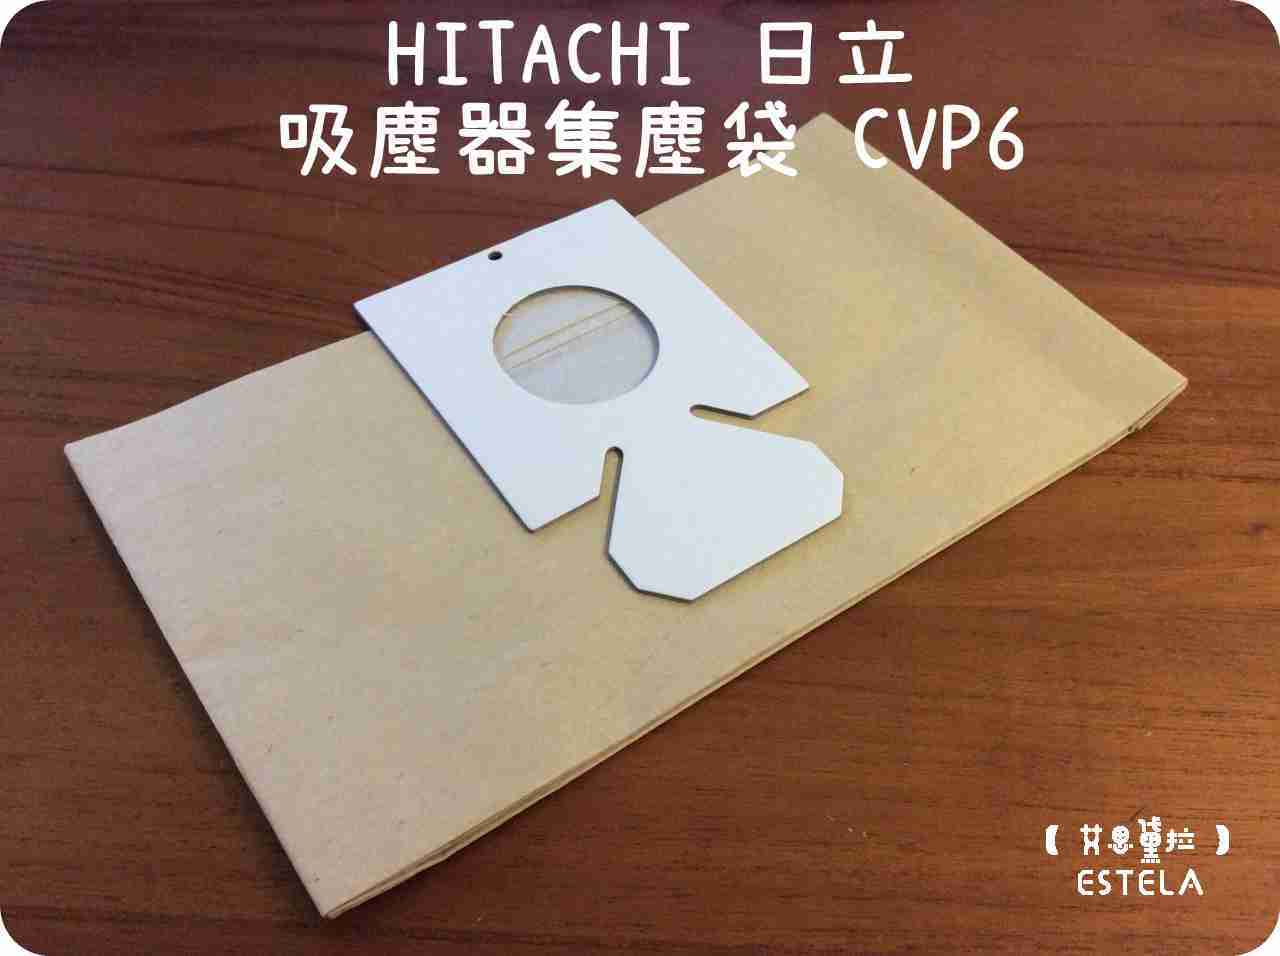 【艾思黛拉 A0268】副廠 HITACHI 日立 吸塵器集塵袋 CVP6 吸塵器紙袋CV-P6 CV-AM14